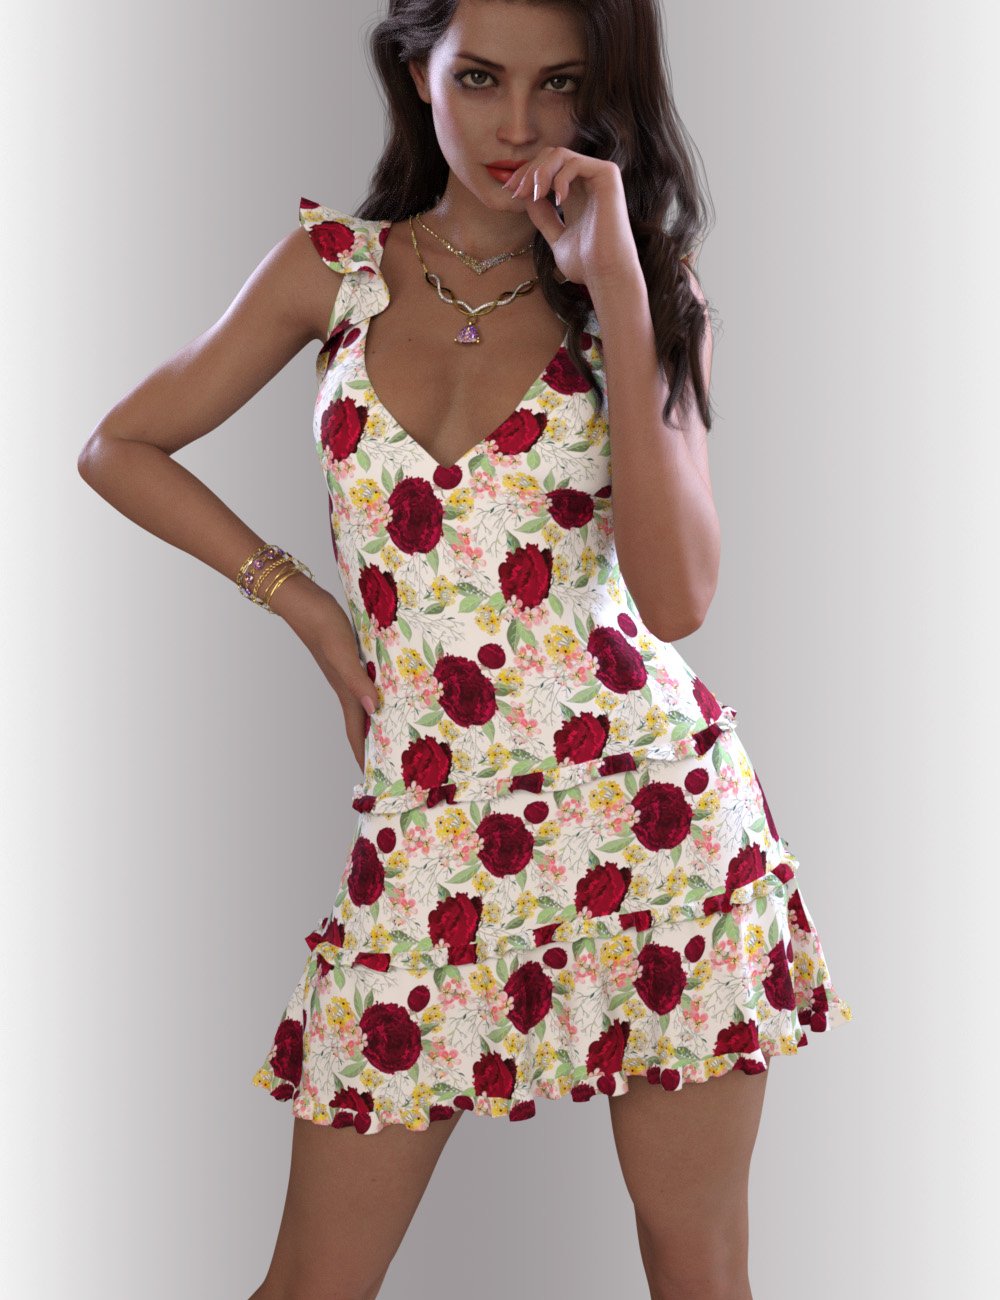 dForce Skyler Dress Outfit for Genesis 8.1 Females by: OnnelArryn, 3D Models by Daz 3D